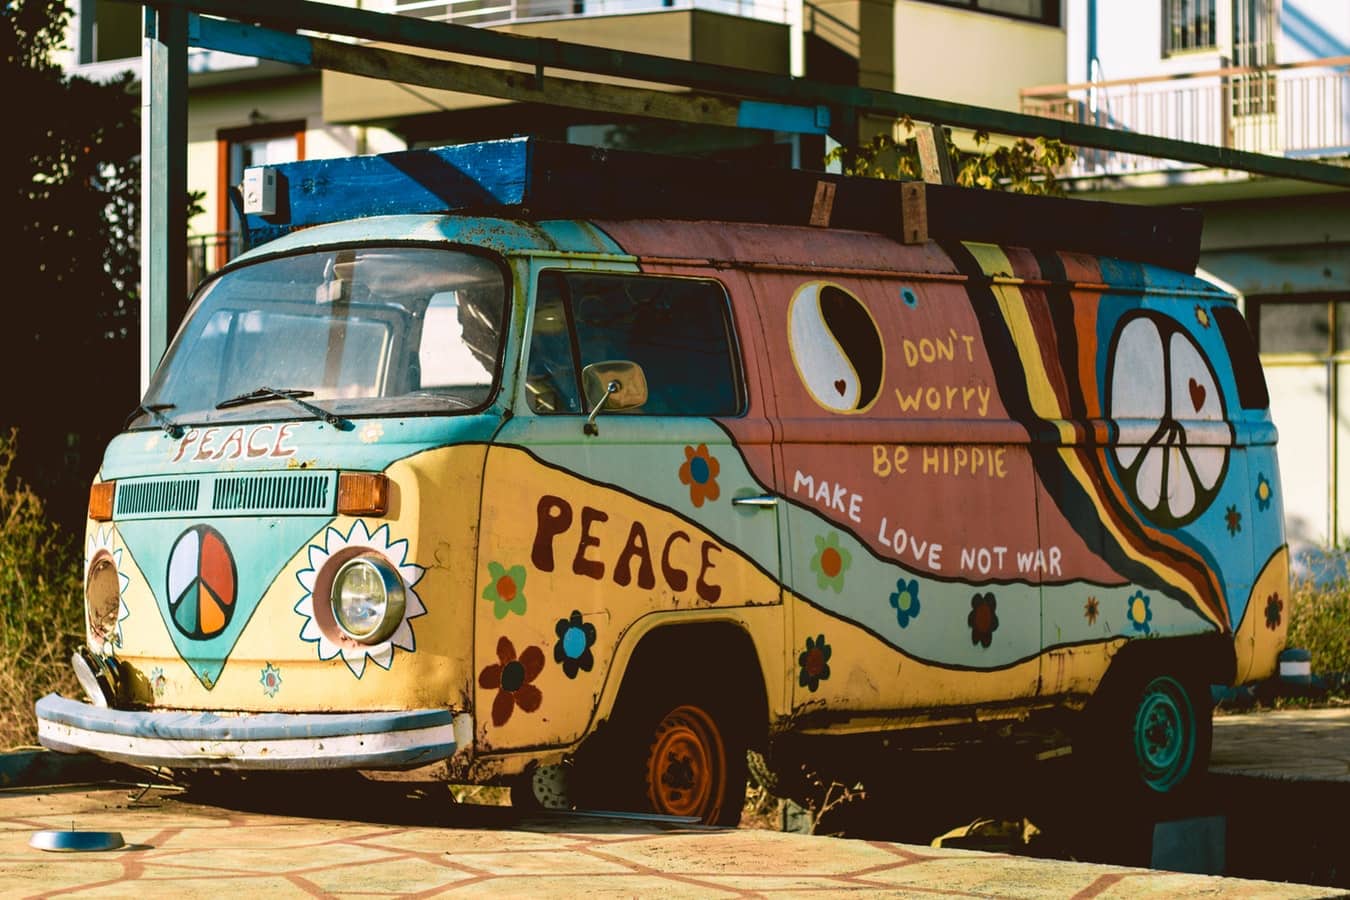 Hippie van from 60s